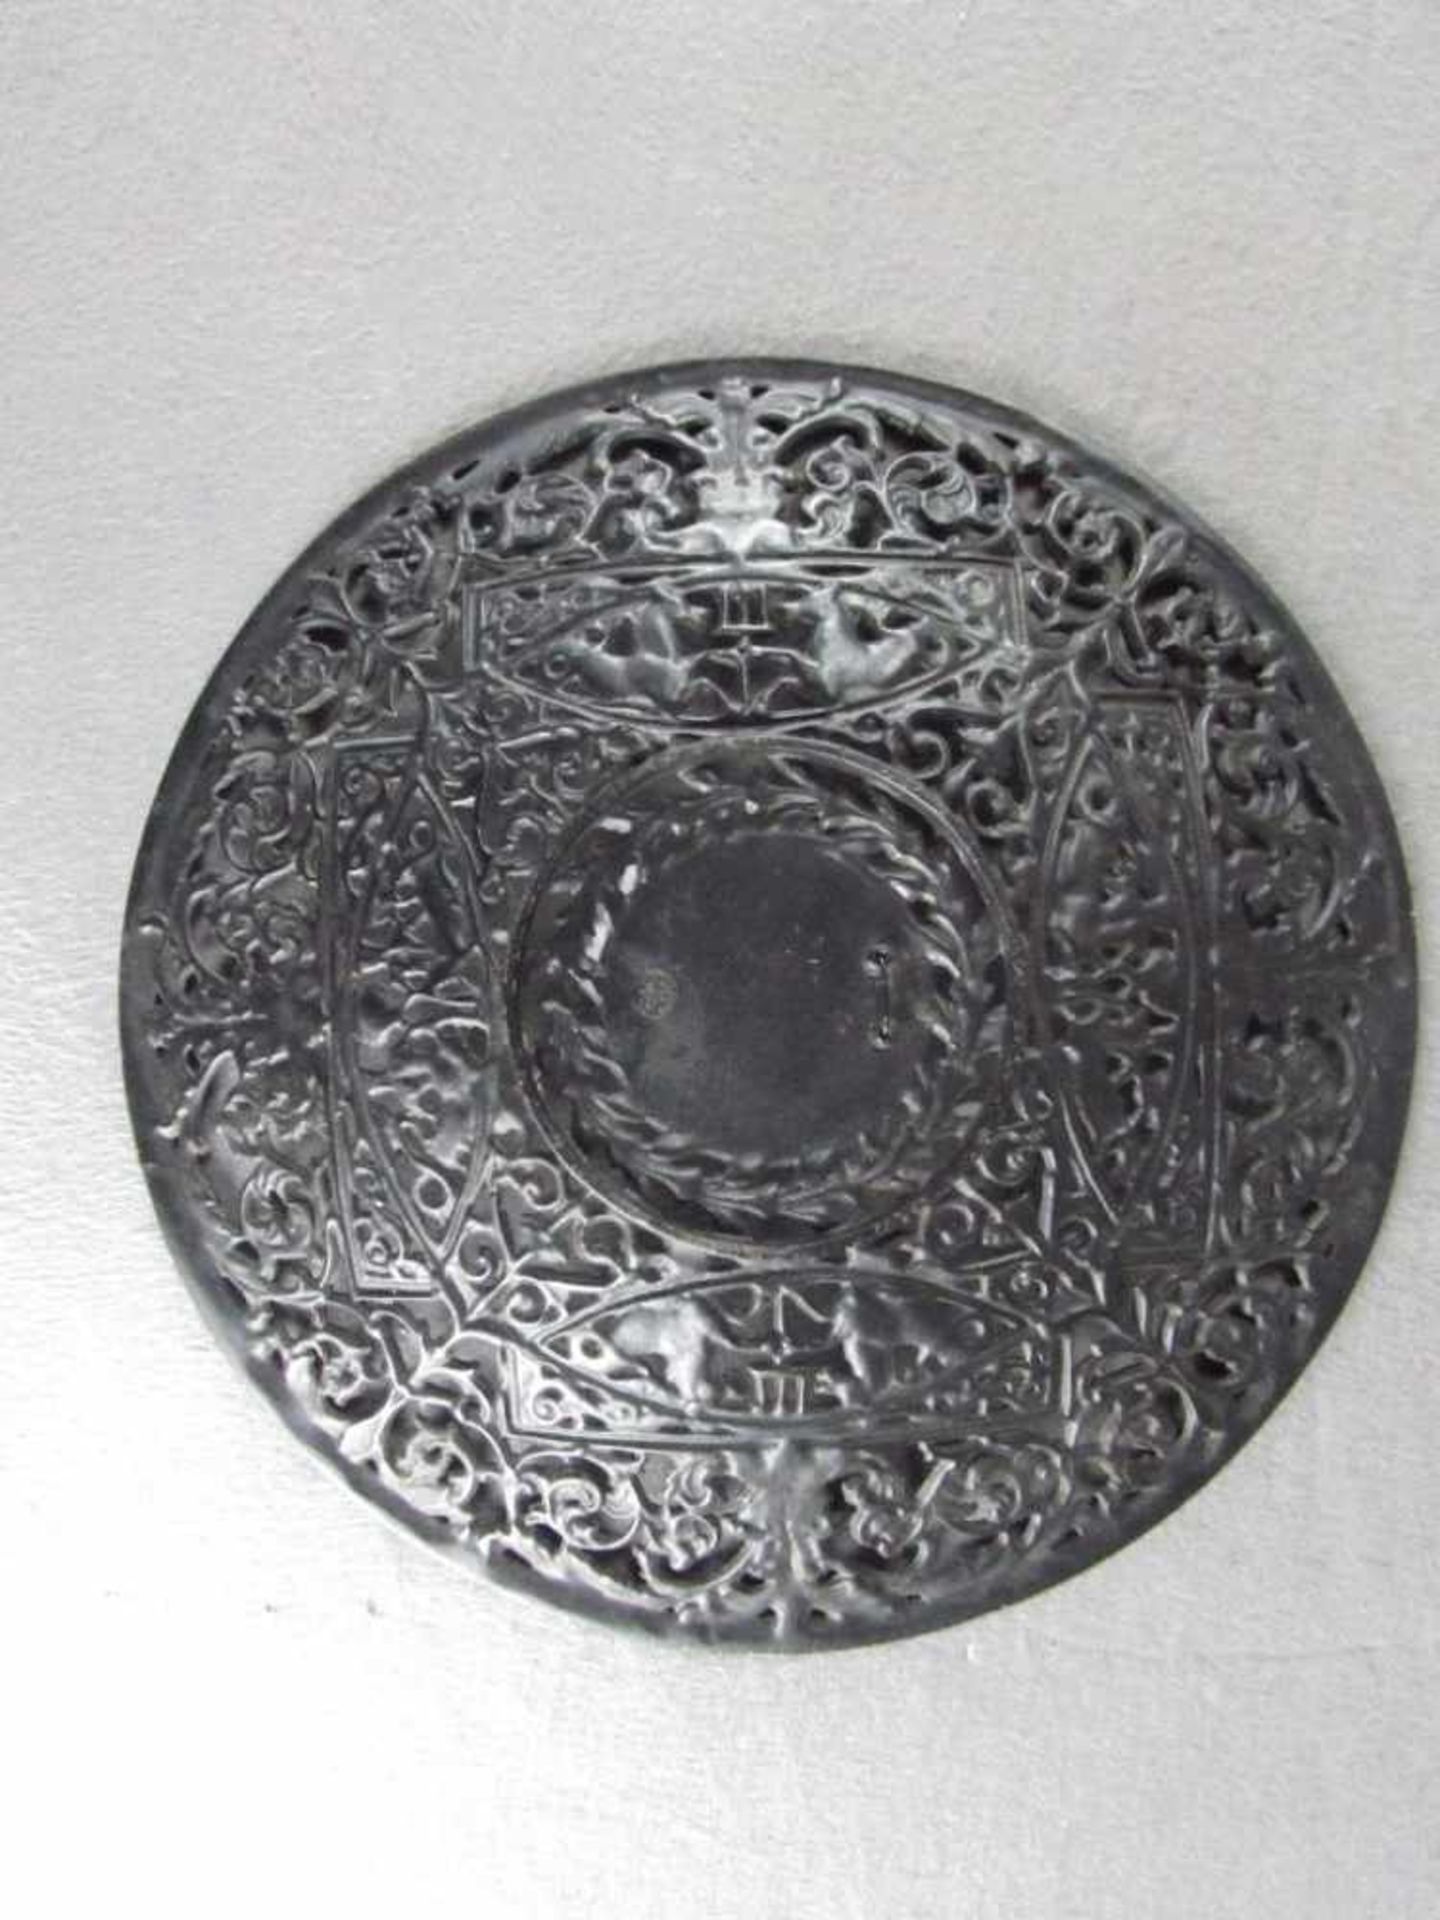 Wandteller Metall wohl Berliner Eisen gemarkt Buderus 1731 Durchmesser 27,5cm - Bild 3 aus 4